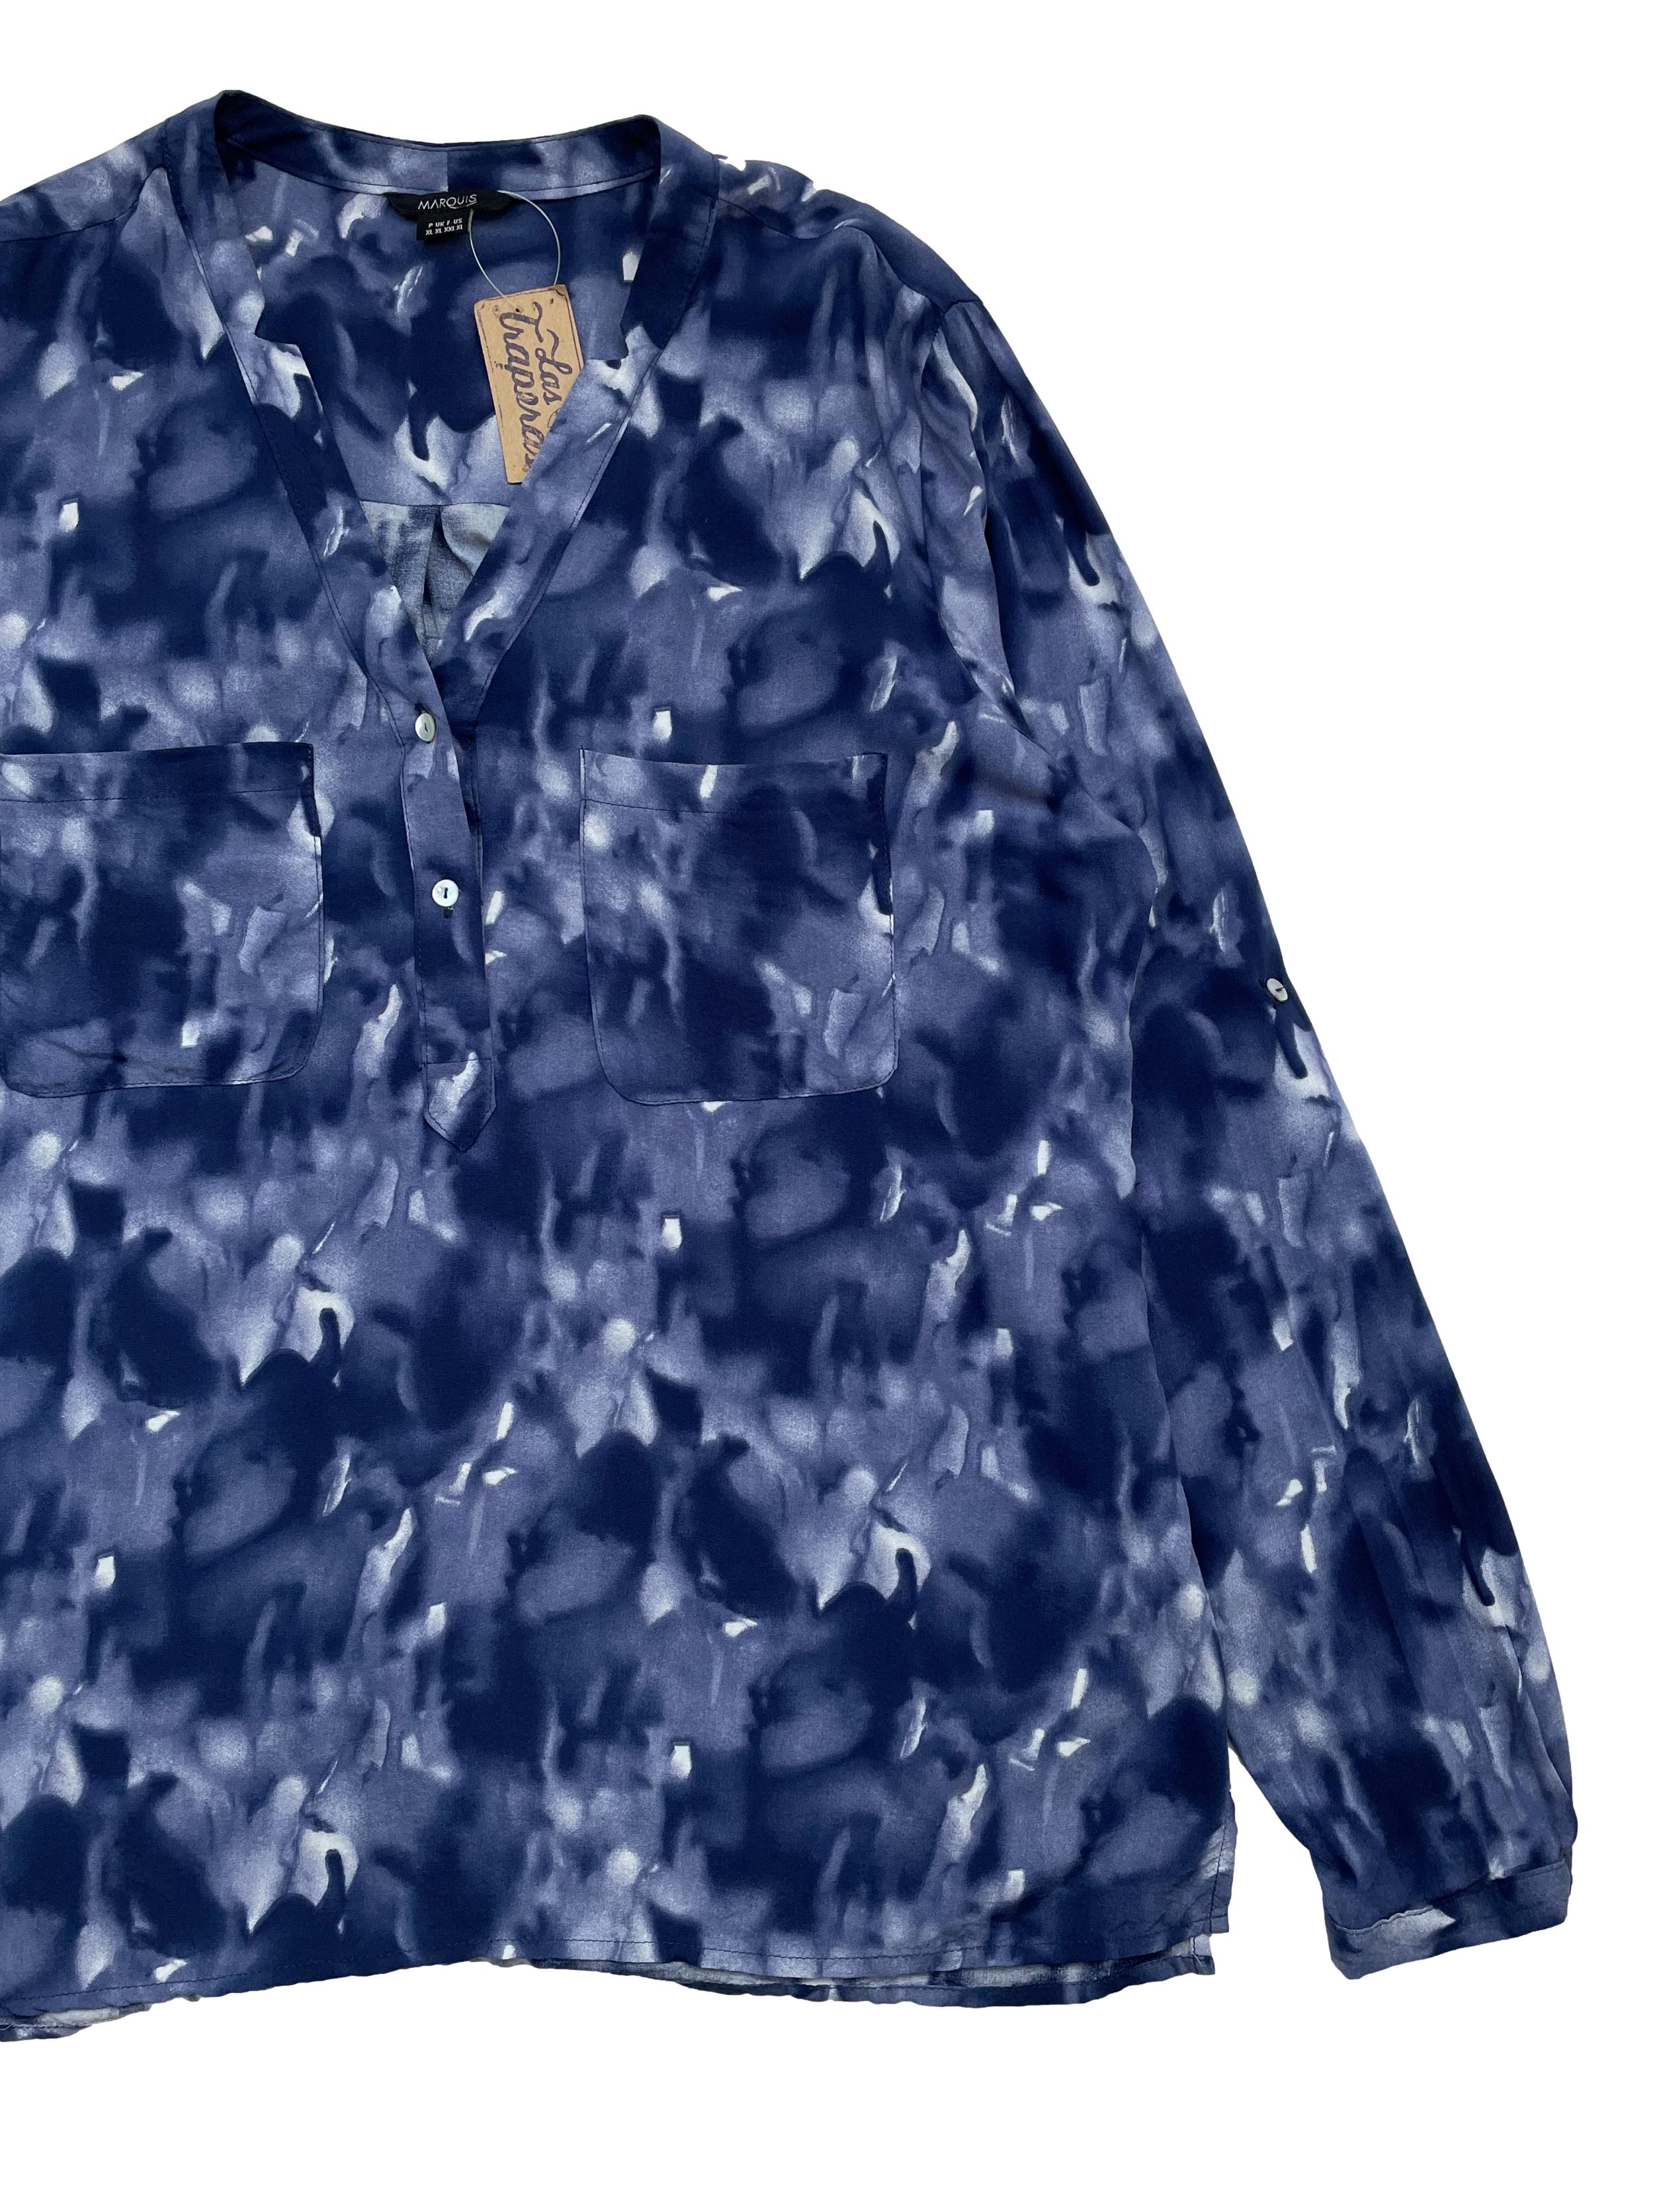 Blusa Marquis estilo tie dye azul, tela fresca, botones y bolsillos en el pecho. Busto 110cm Largo 65cm